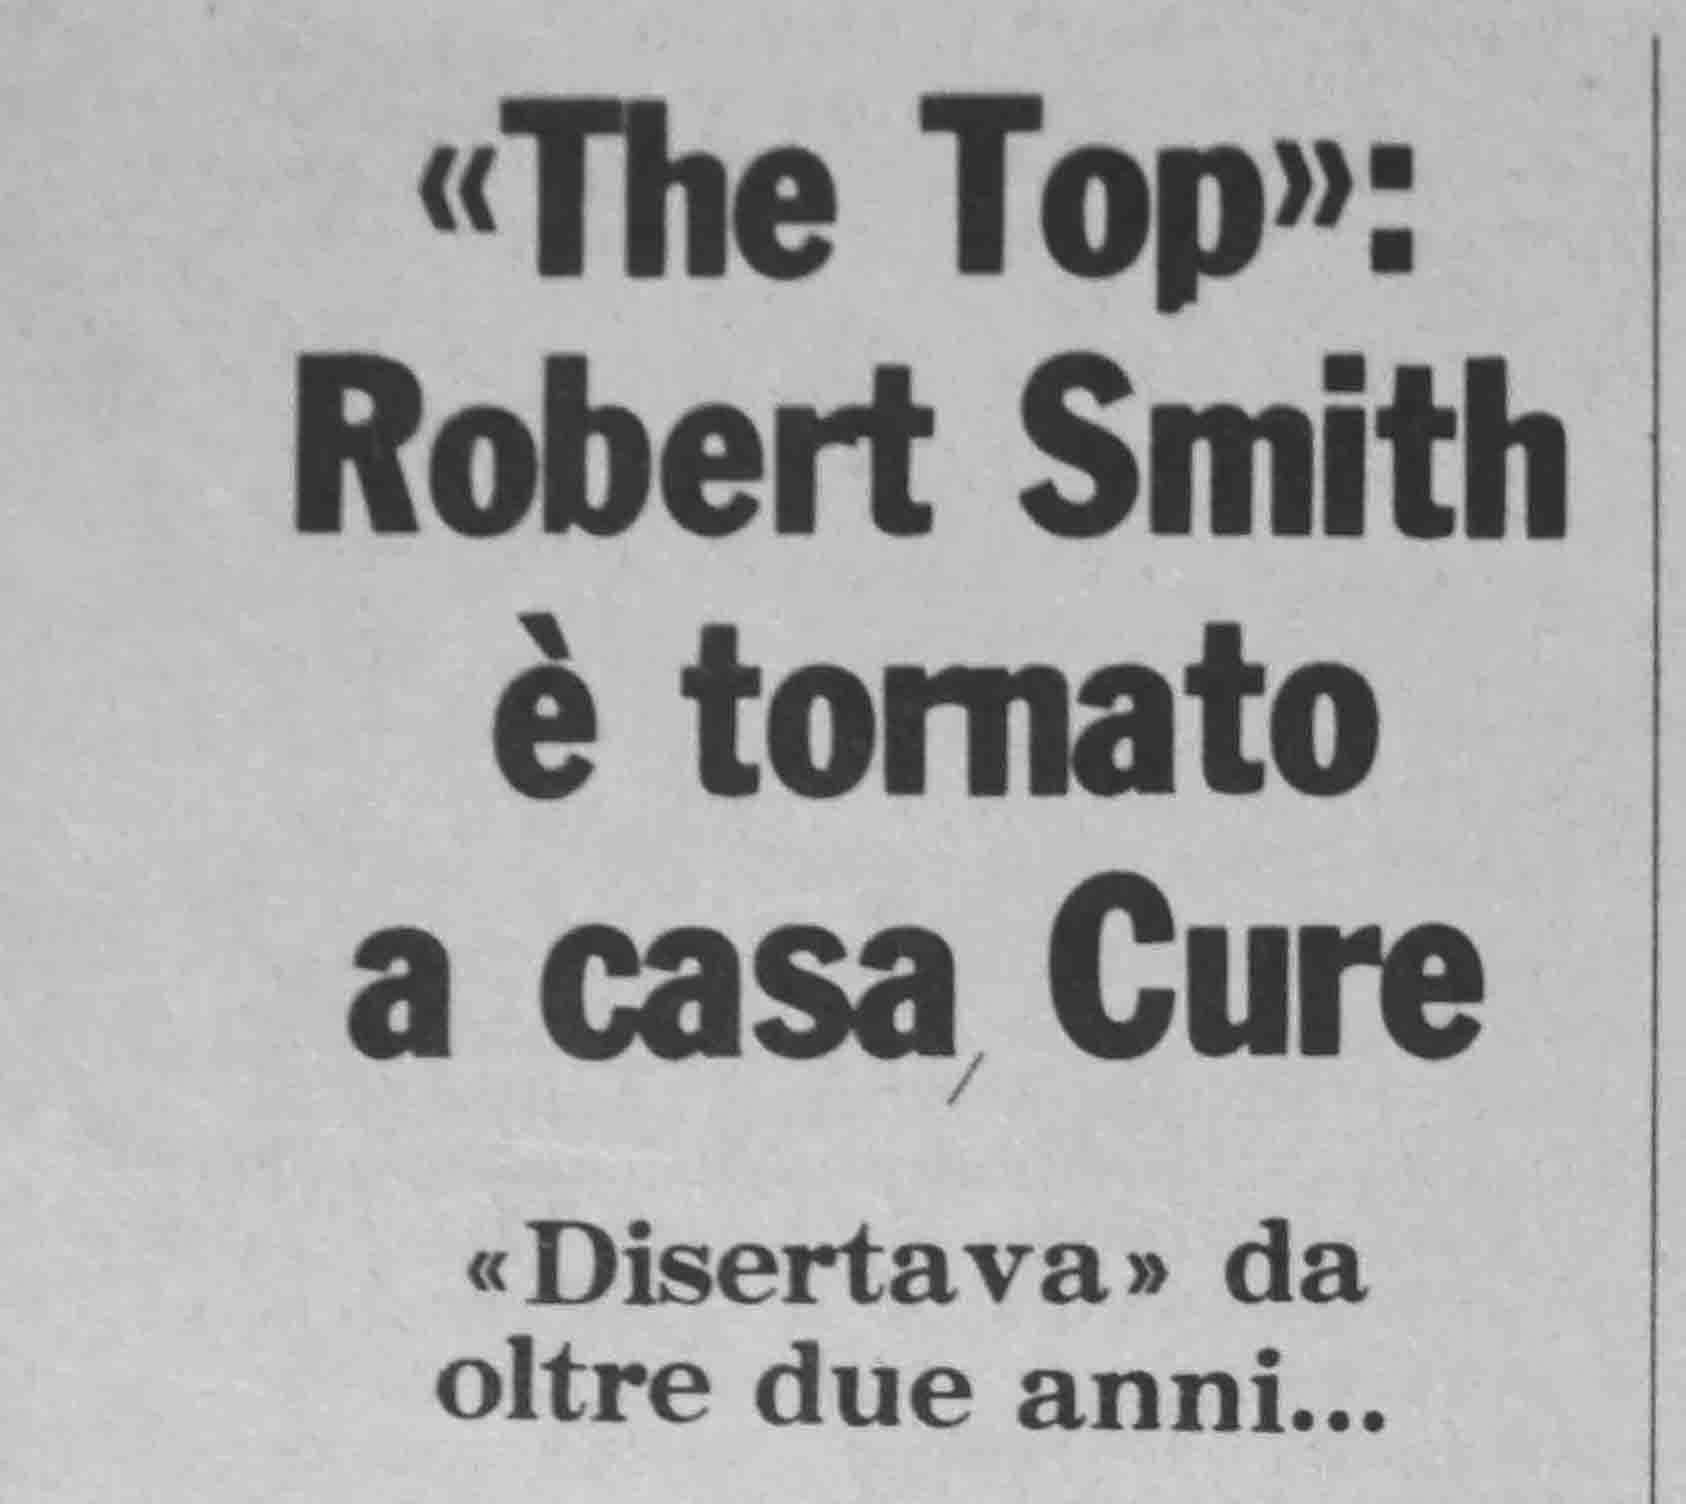 27.06.1984. “The Top” : Robert Smith è tornato a casa Cure